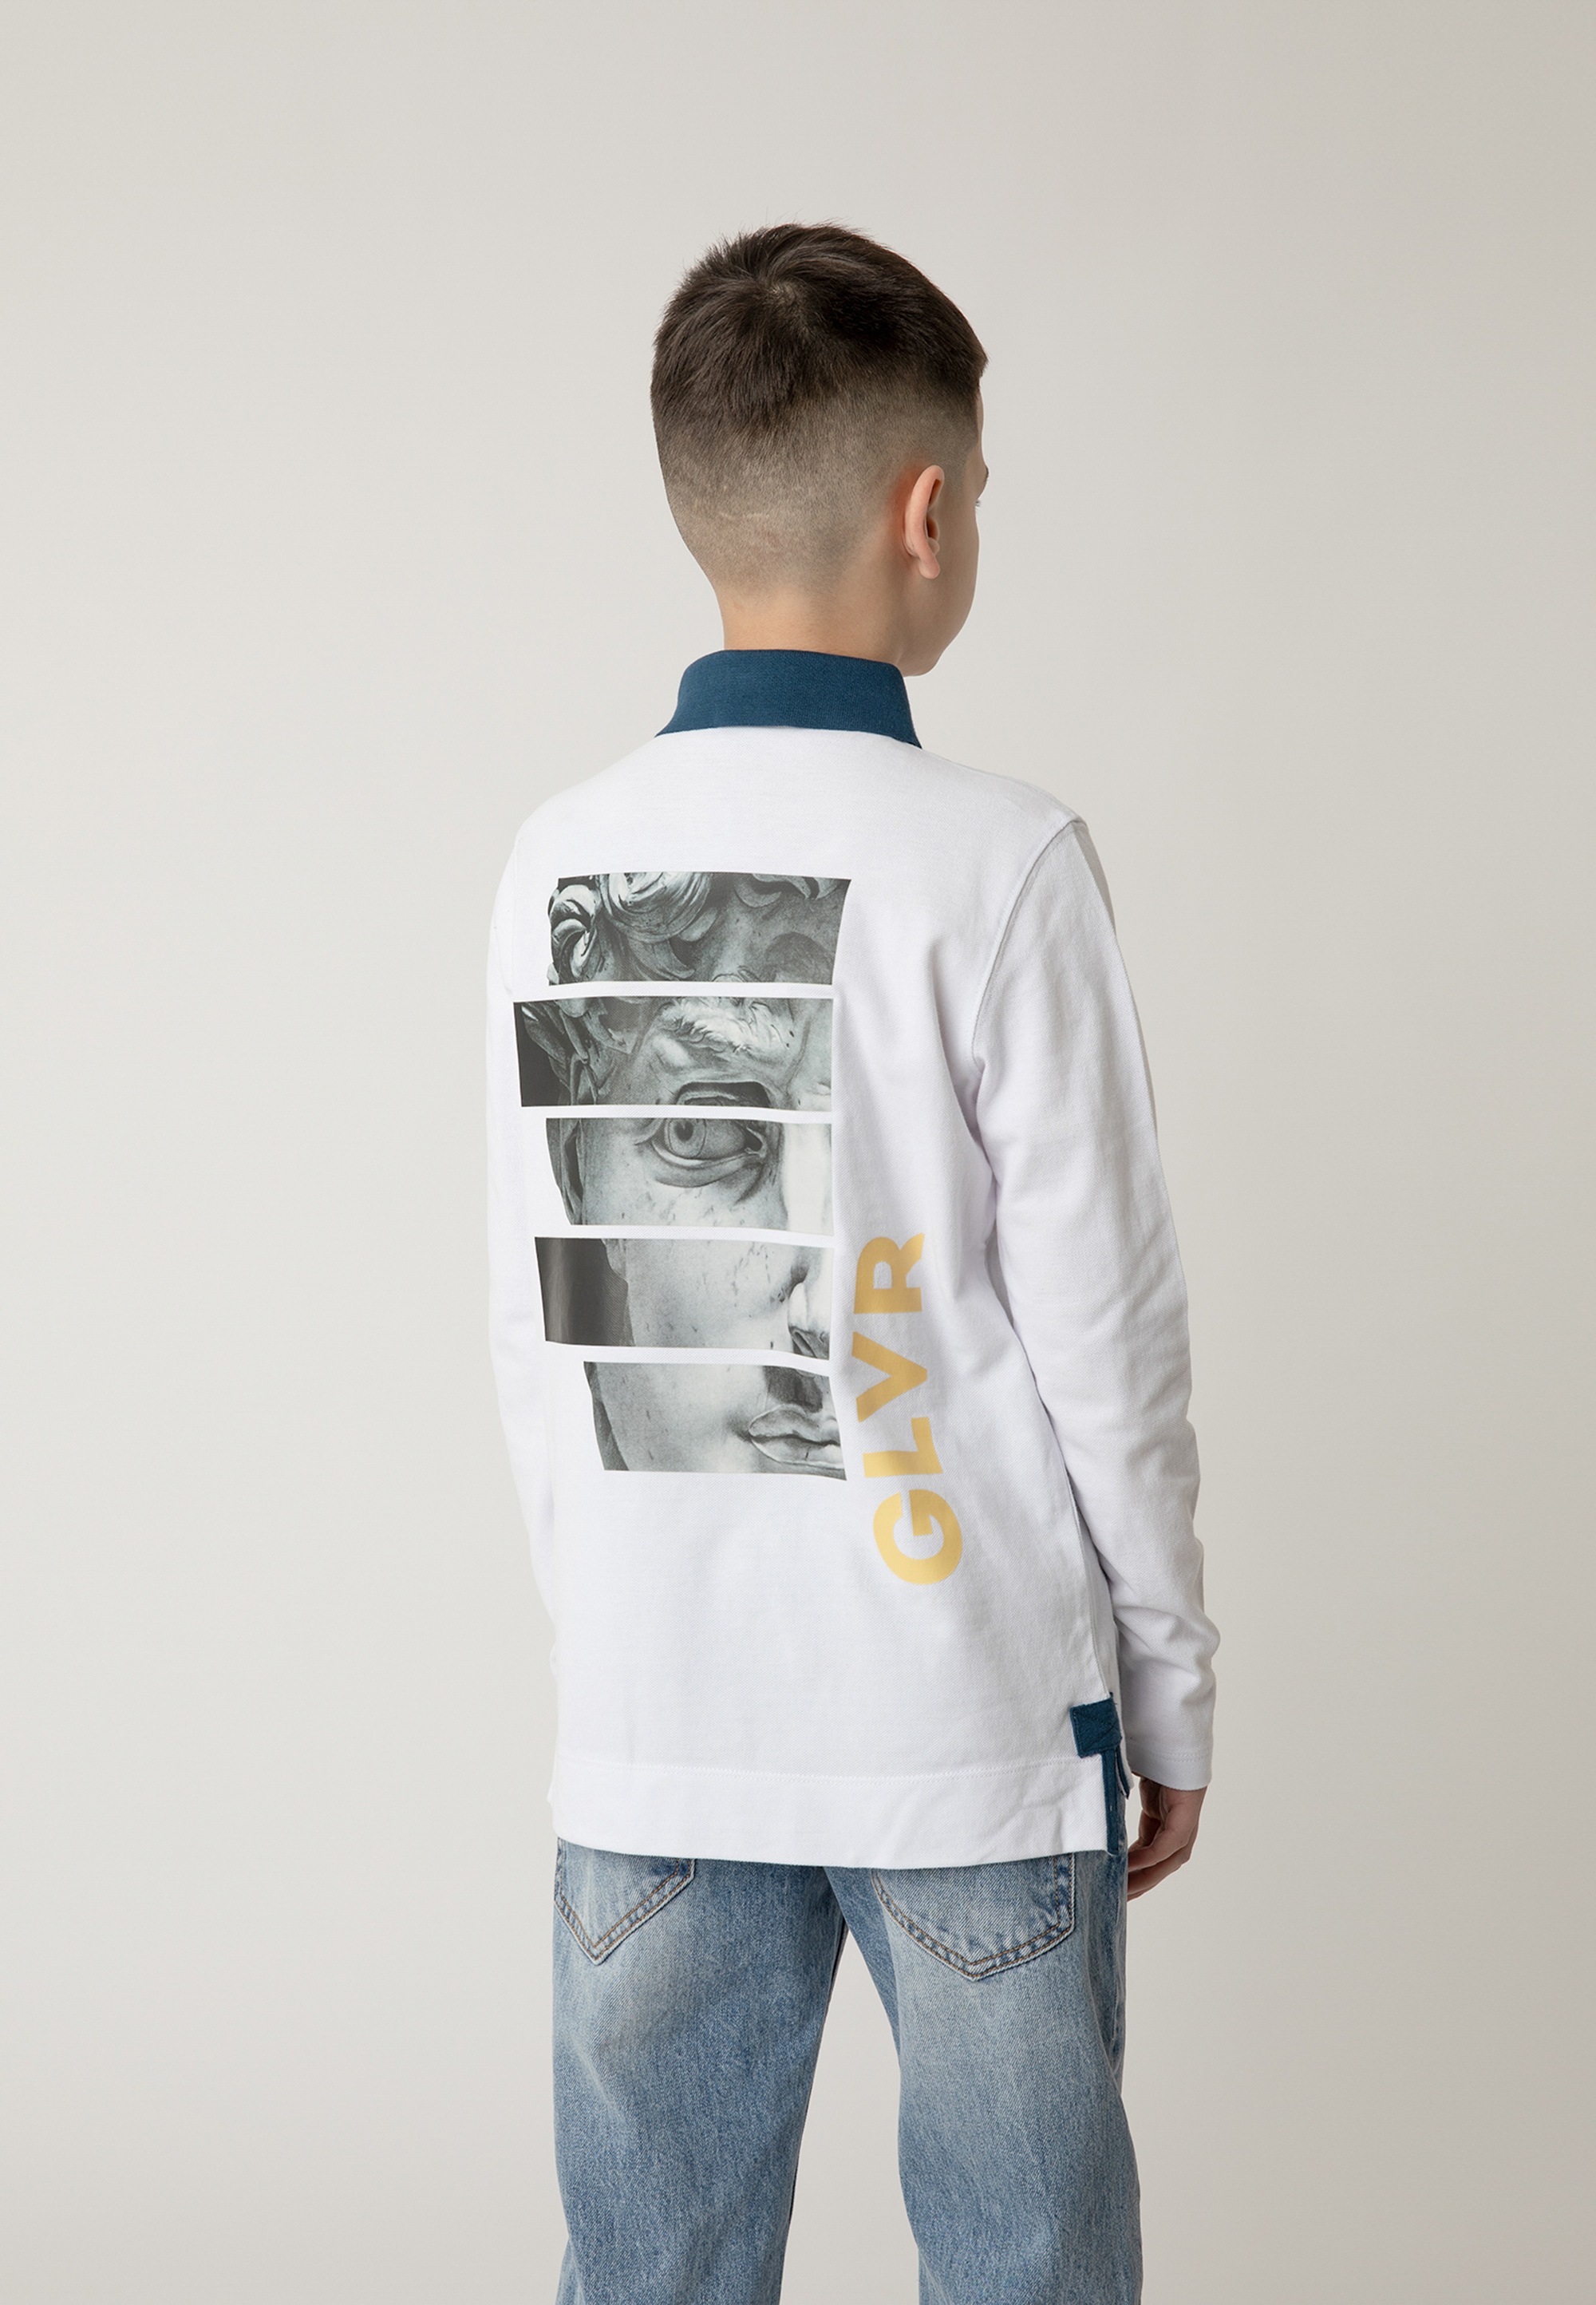 Gulliver Poloshirt, mit stylischem Print und Kontrast-Kragen